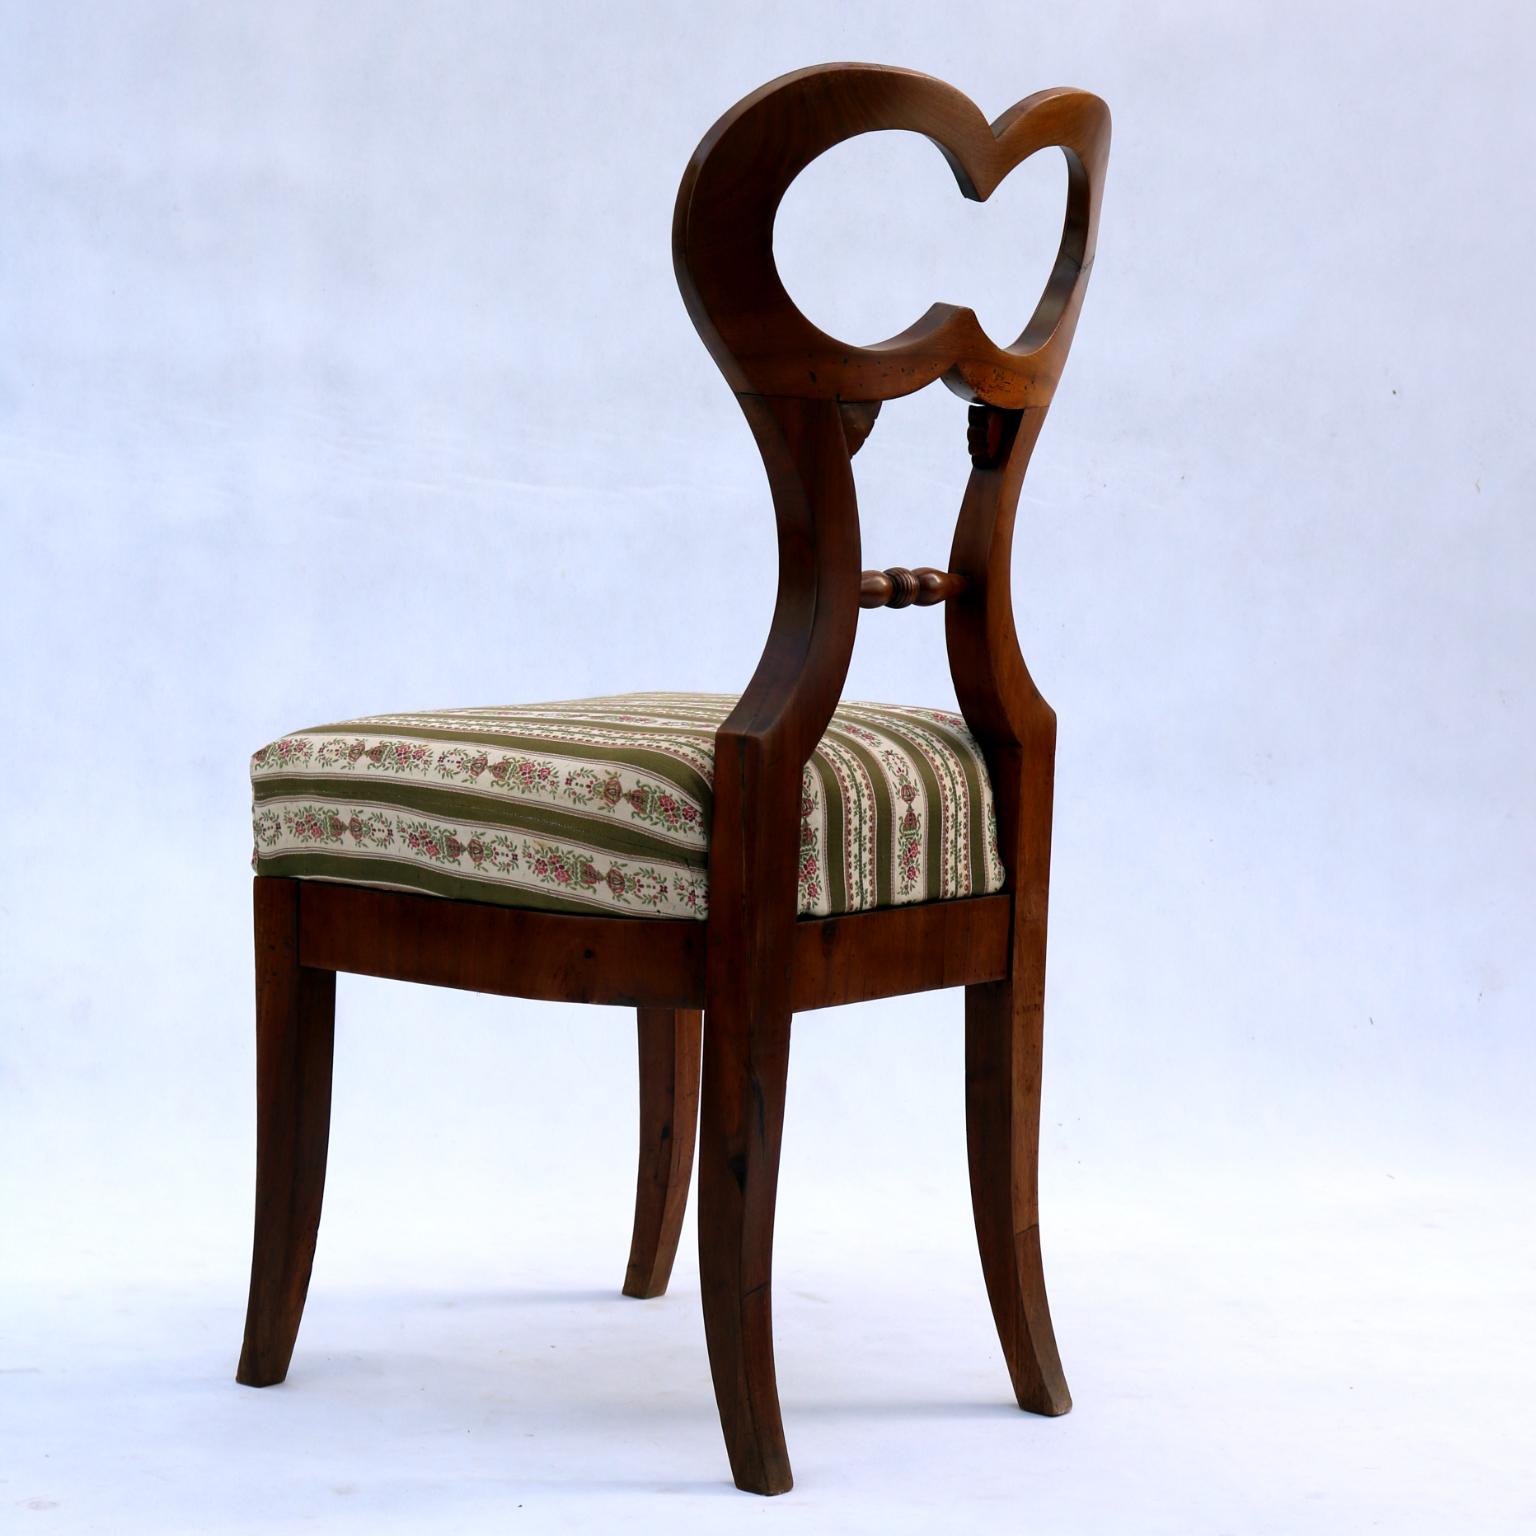 German Biedermeier Chair in Walnut 1820s